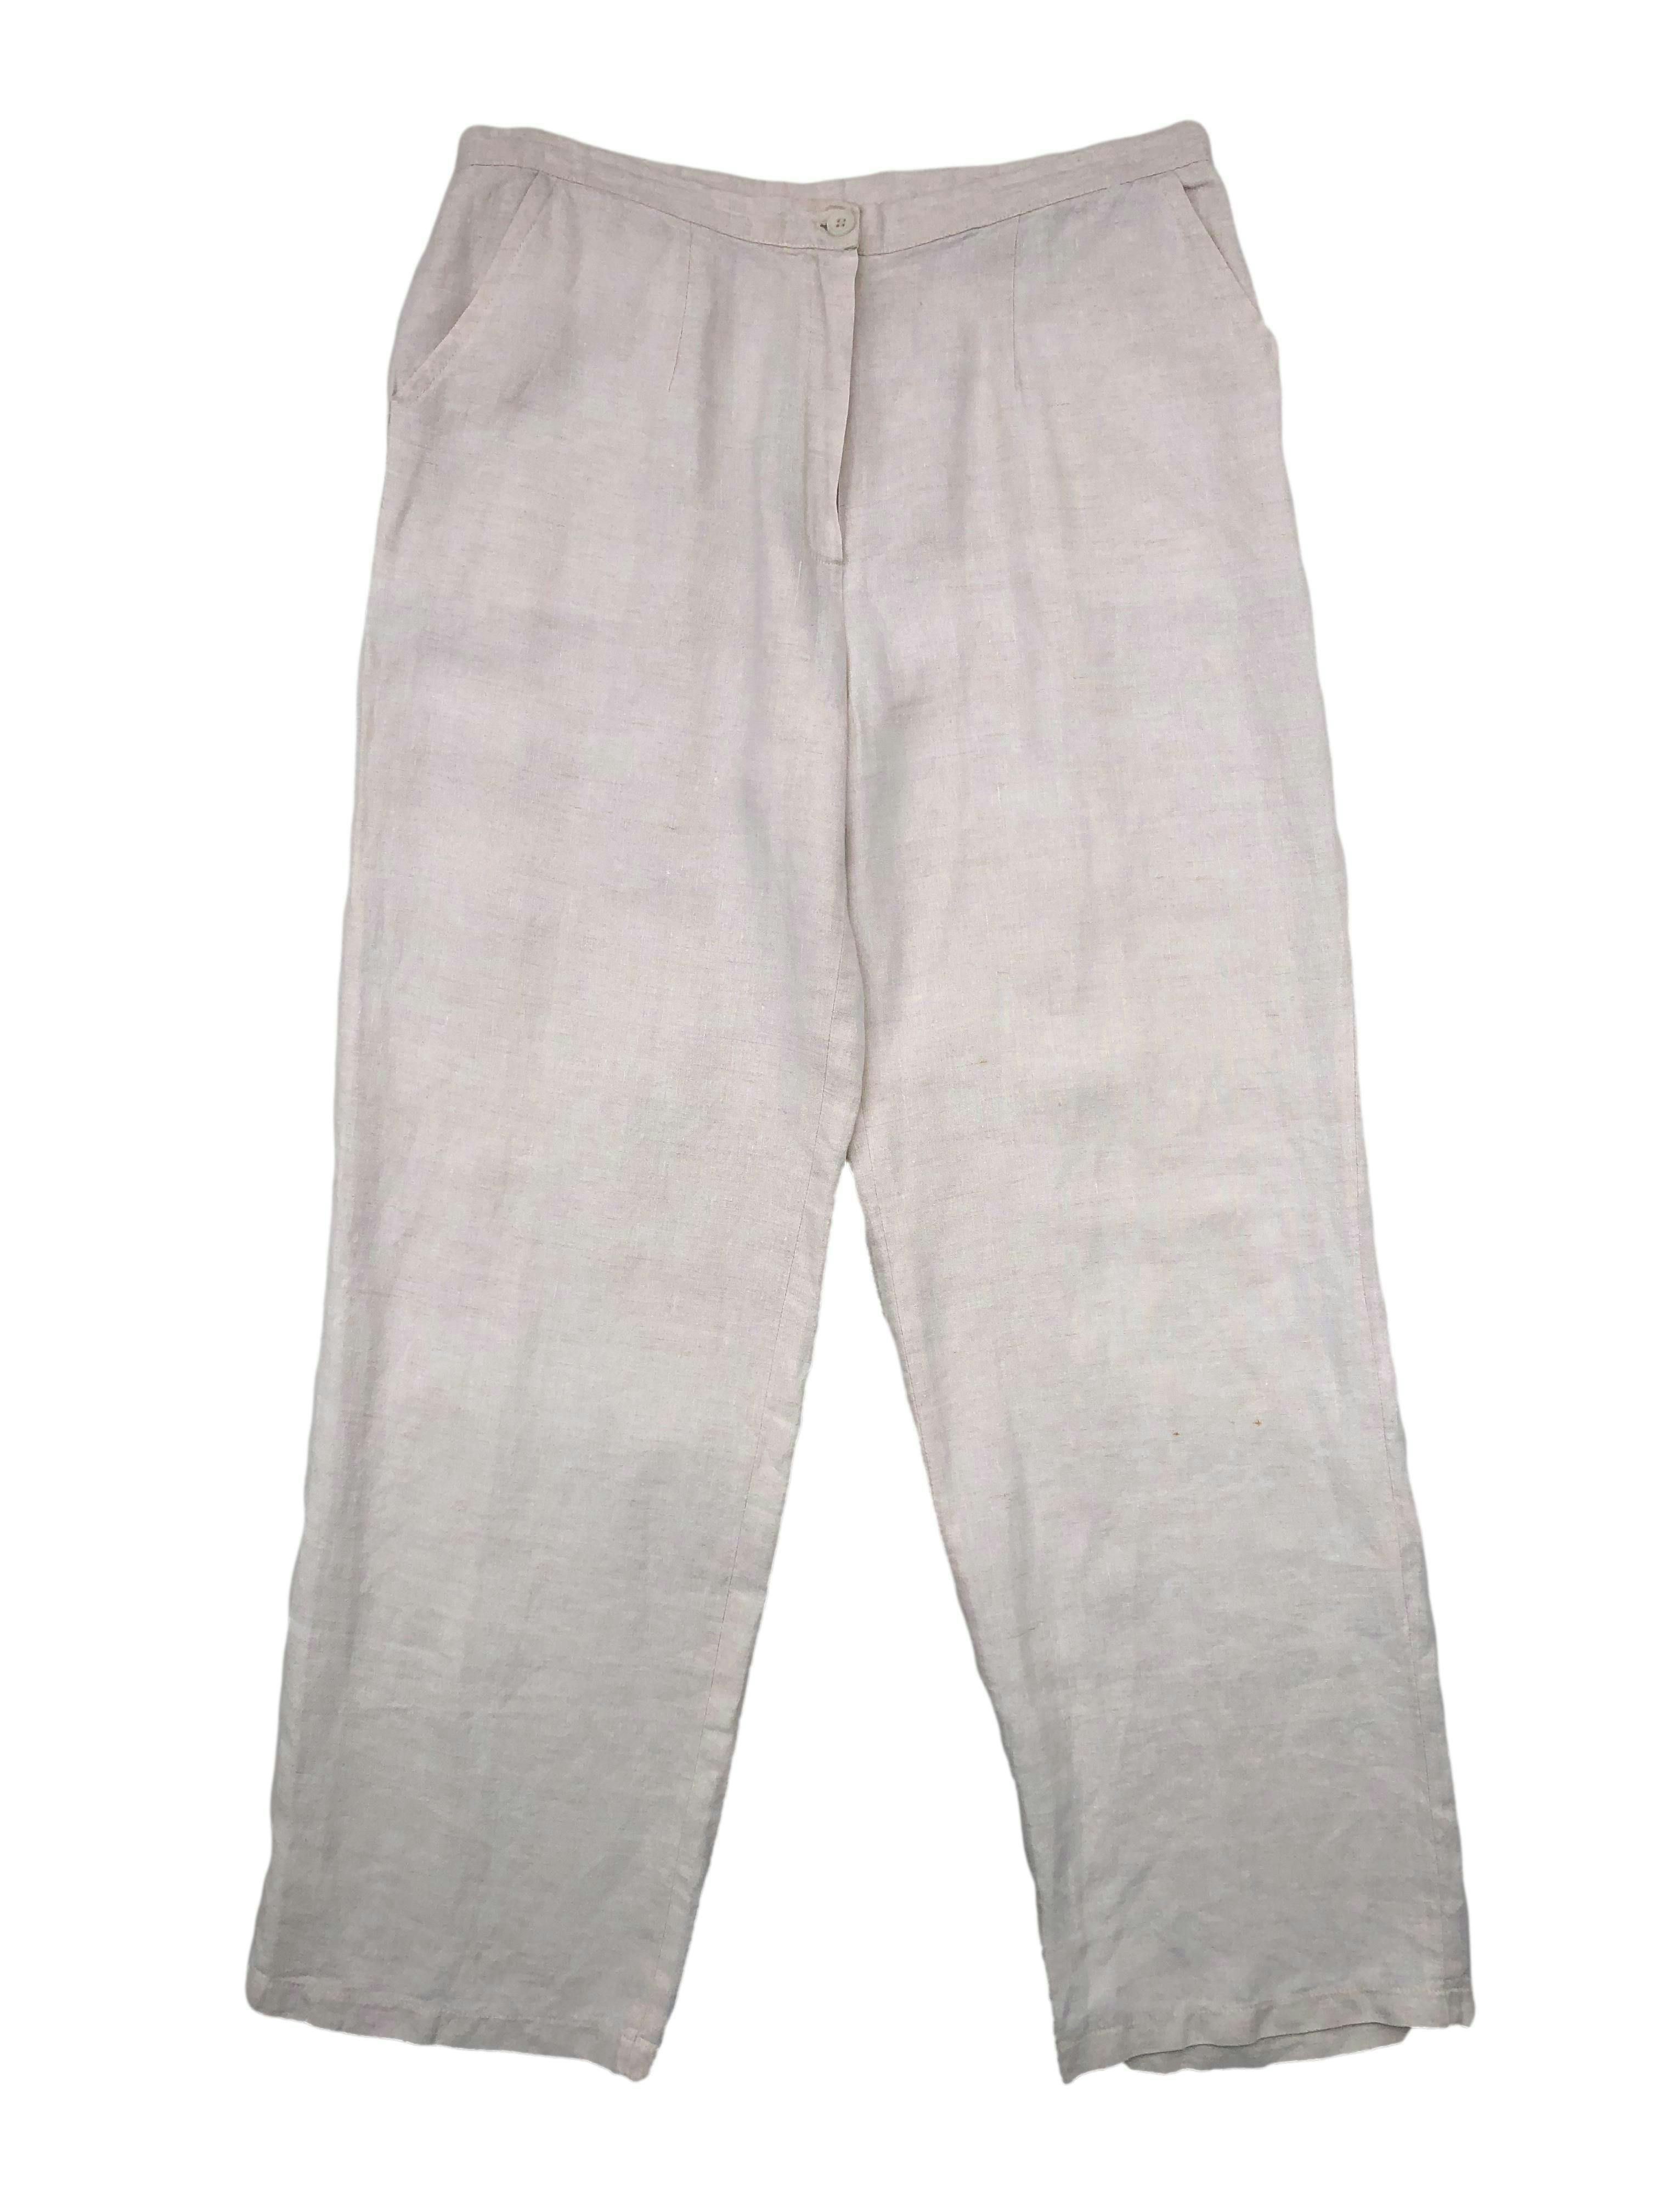 Pantalón crema de tela tipo lino,corte recto con pinzas y bolsillos frontales. Cintura 82cm, Largo 100cm.